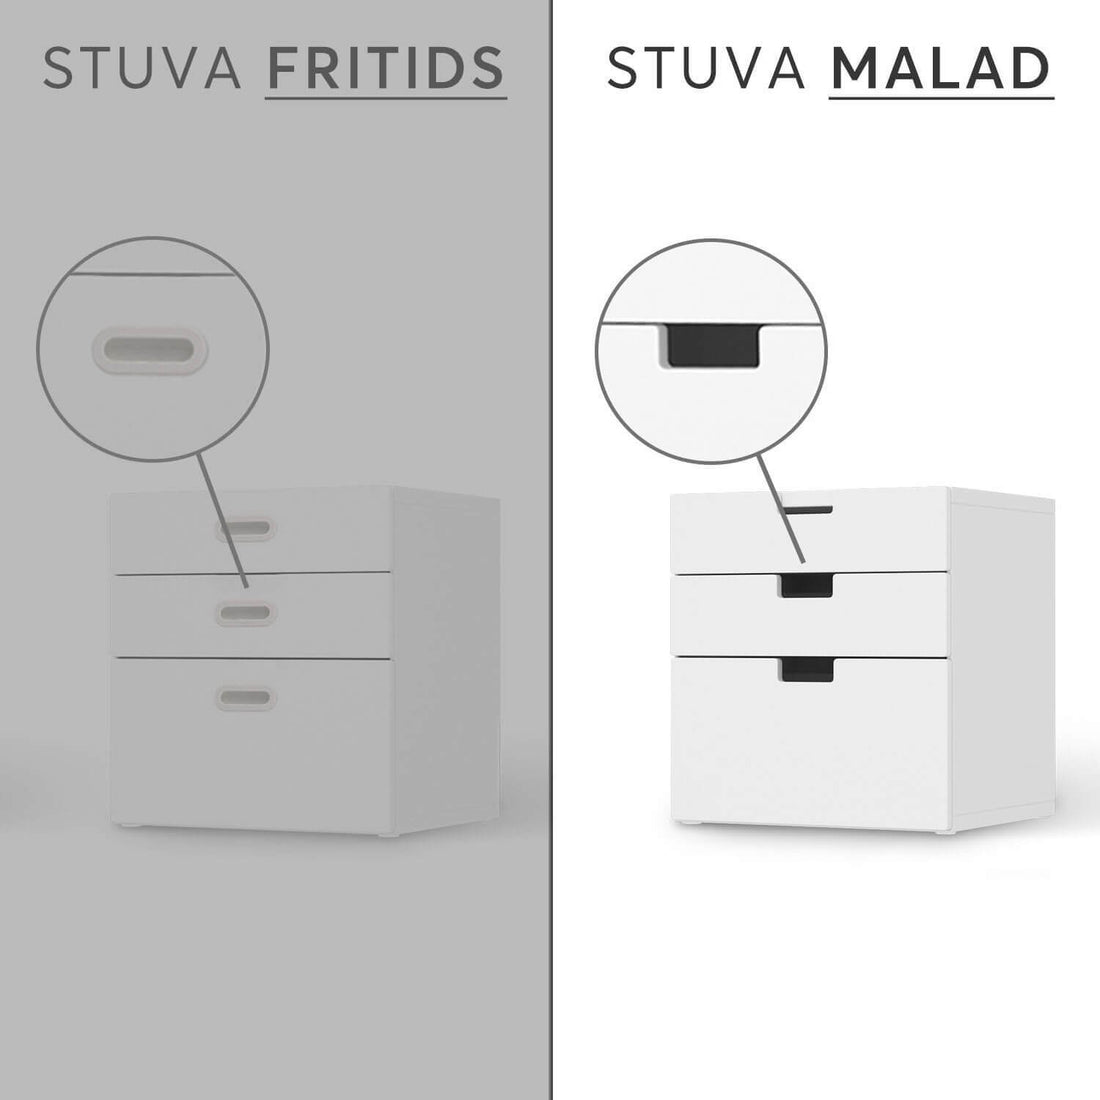 Folie für Möbel IKEA Stuva / Malad Kommode - 3 Schubladen - Design: Pink Light